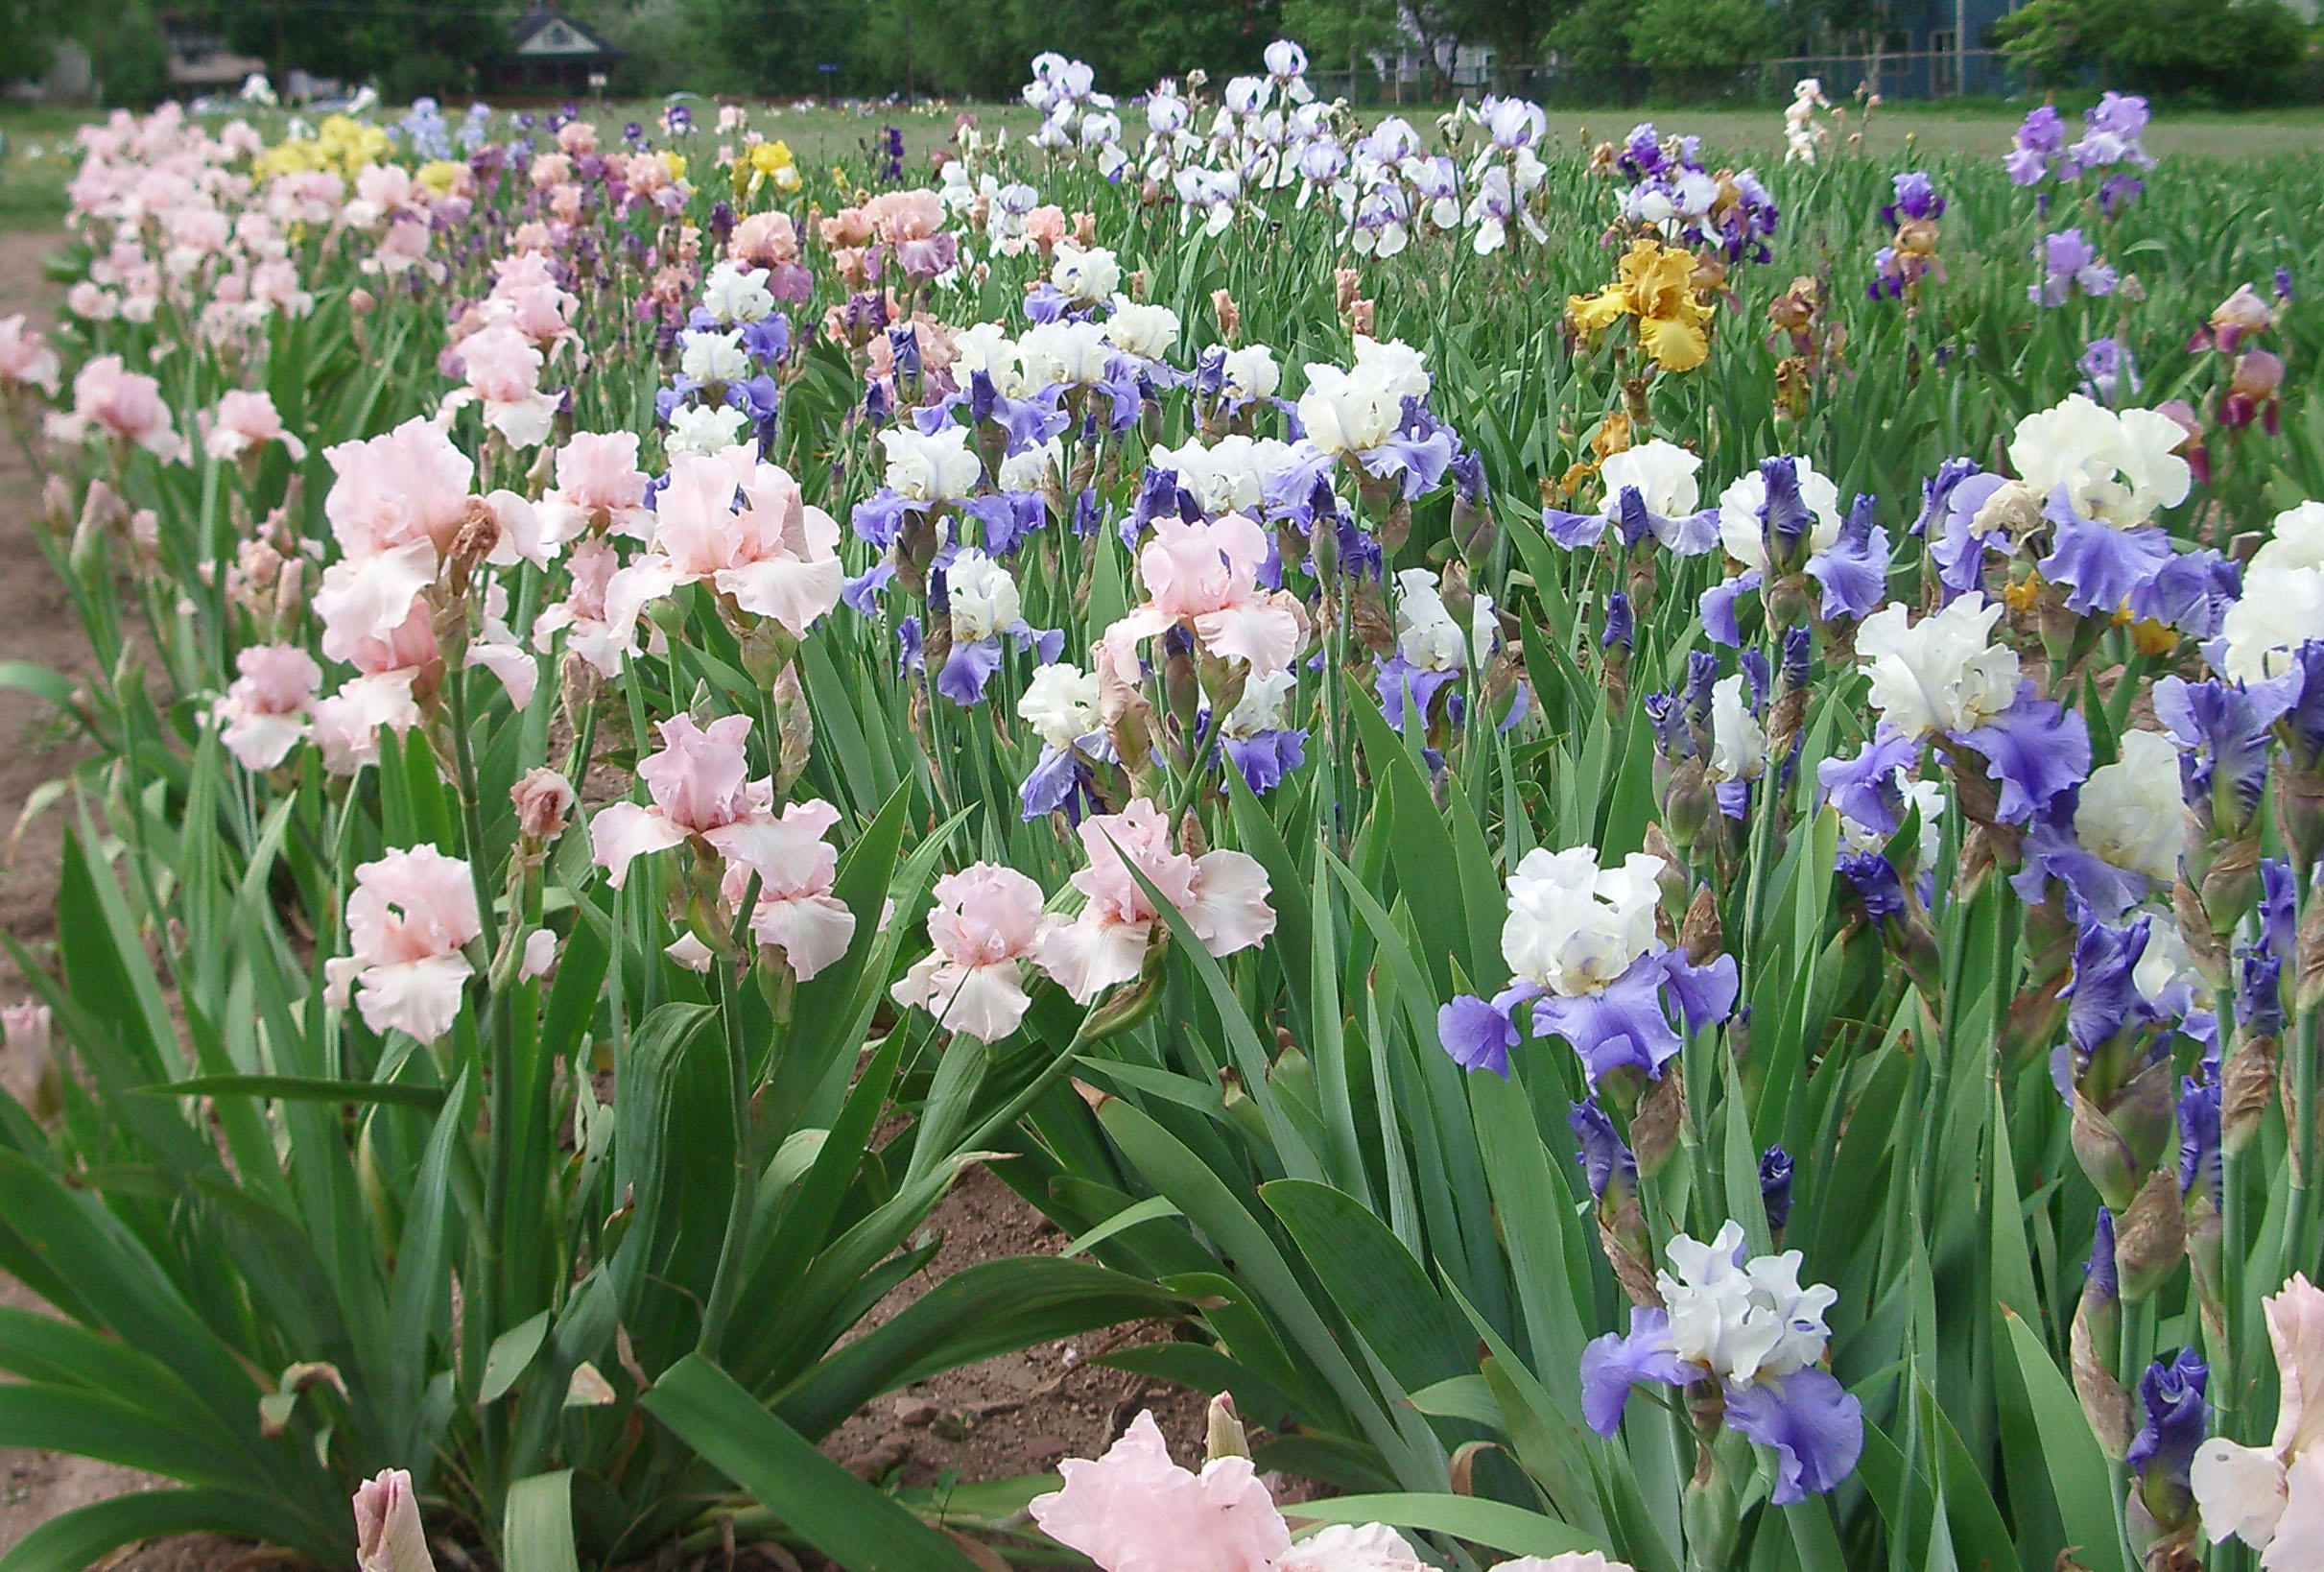 A field of irises in bloom.